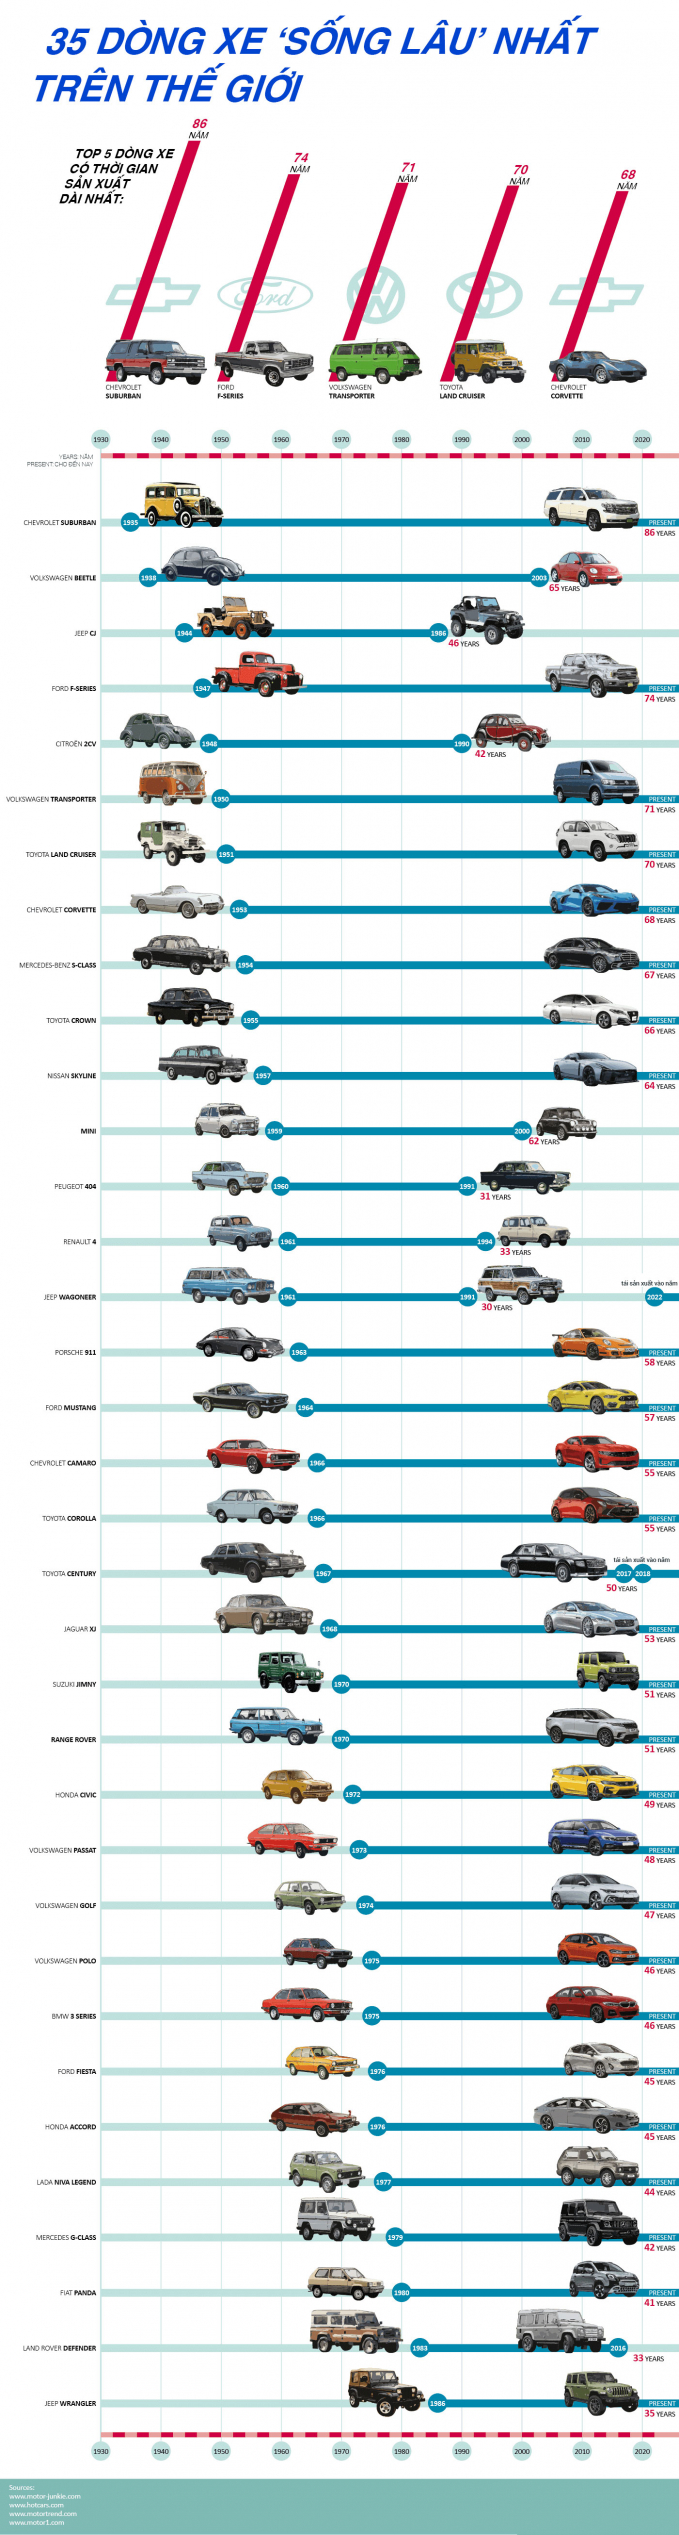   Tổng hợp danh sách 35 xe ôtô có vòng đời sản xuất lâu nhất trên thế giới.  